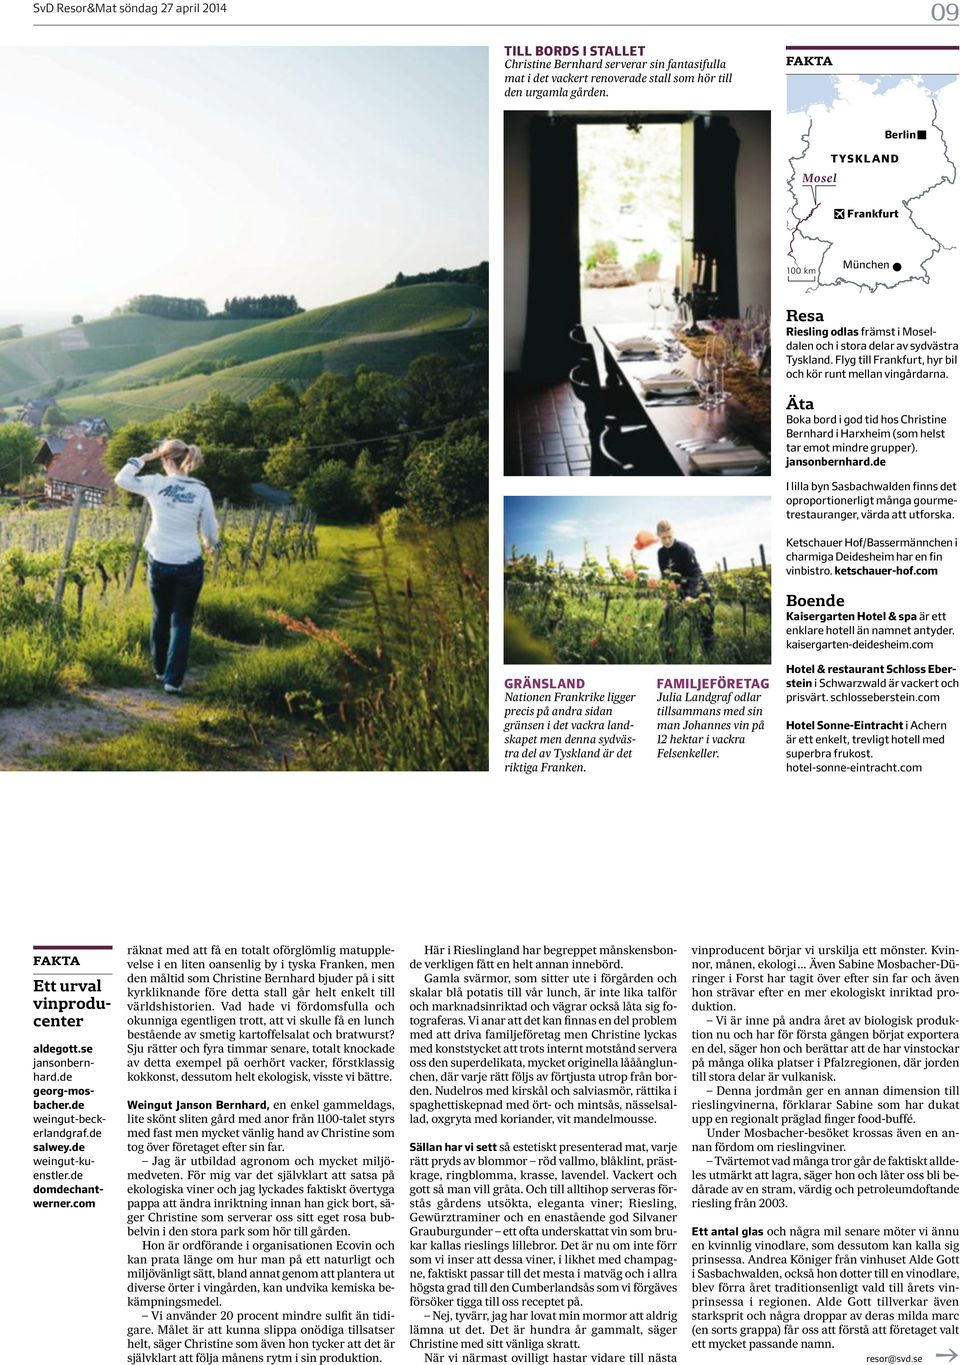 Franken. FAMILJEFÖRETAG Julia Landgraf odlar tillsammans med sin man Johannes vin på 12 hektar i vackra Felsenkeller. Resa Riesling odlas främst i Moseldalen och i stora delar av sydvästra Tyskland.